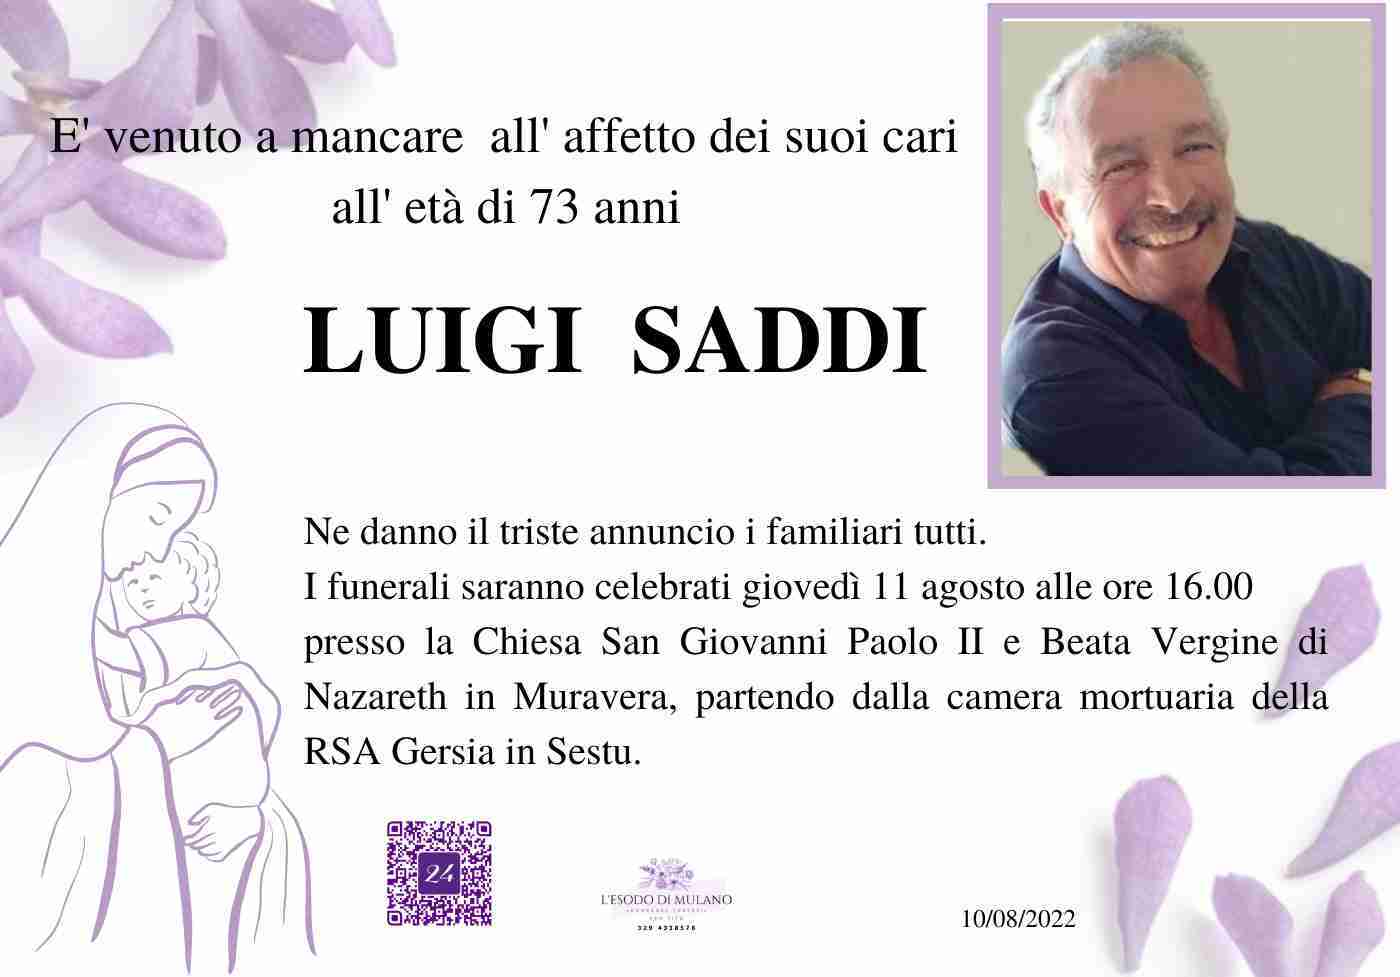 Luigi Saddi